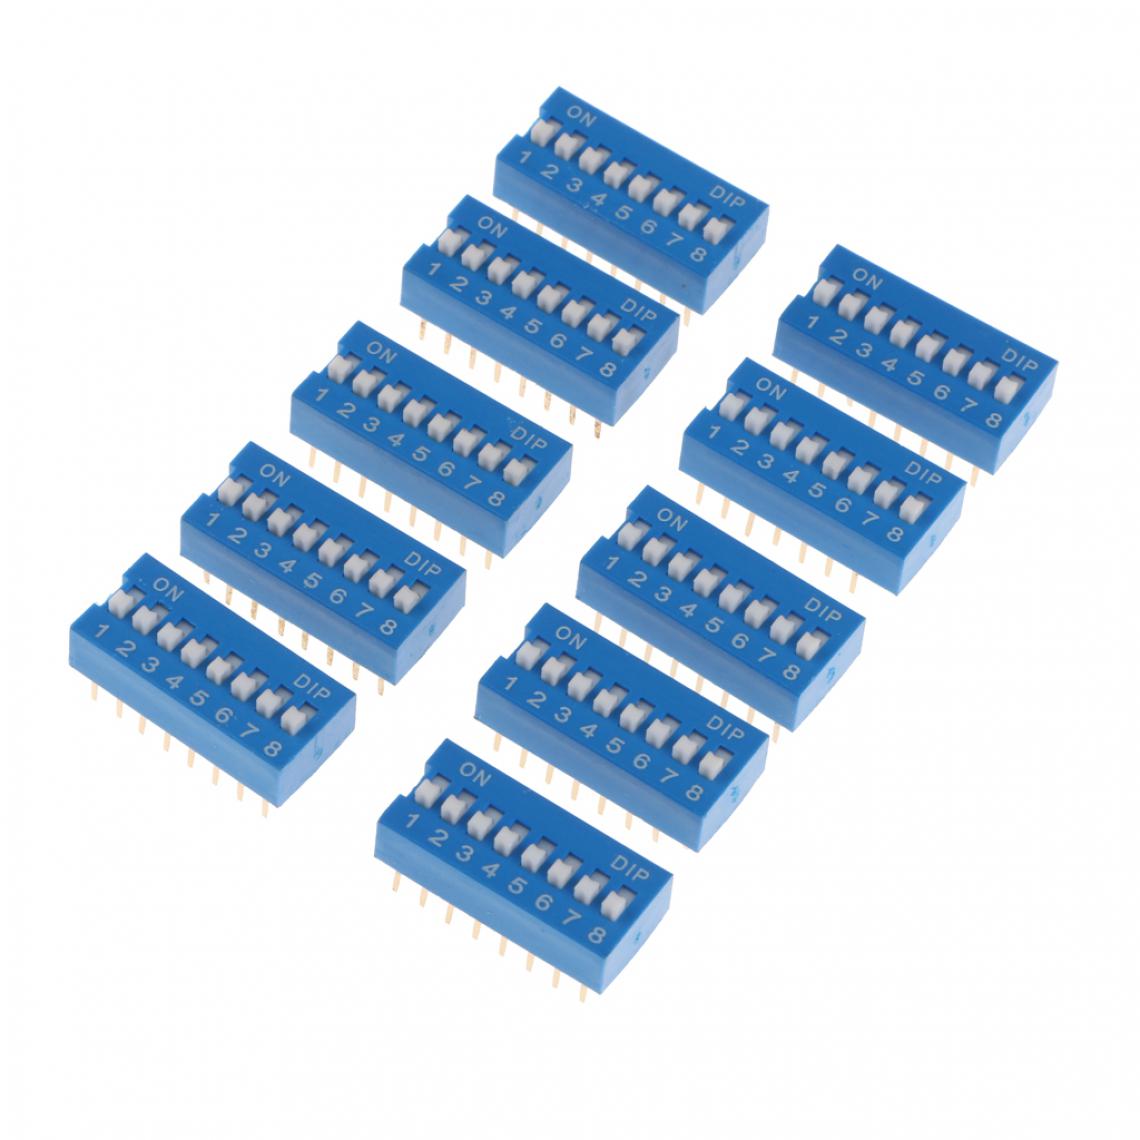 marque generique - 10pcs 2.54mm Pitch 8 Positions 16 Broches Bleu Dip Dil ââinterrupteur à Bascule 8 Bits - Interrupteur connecté